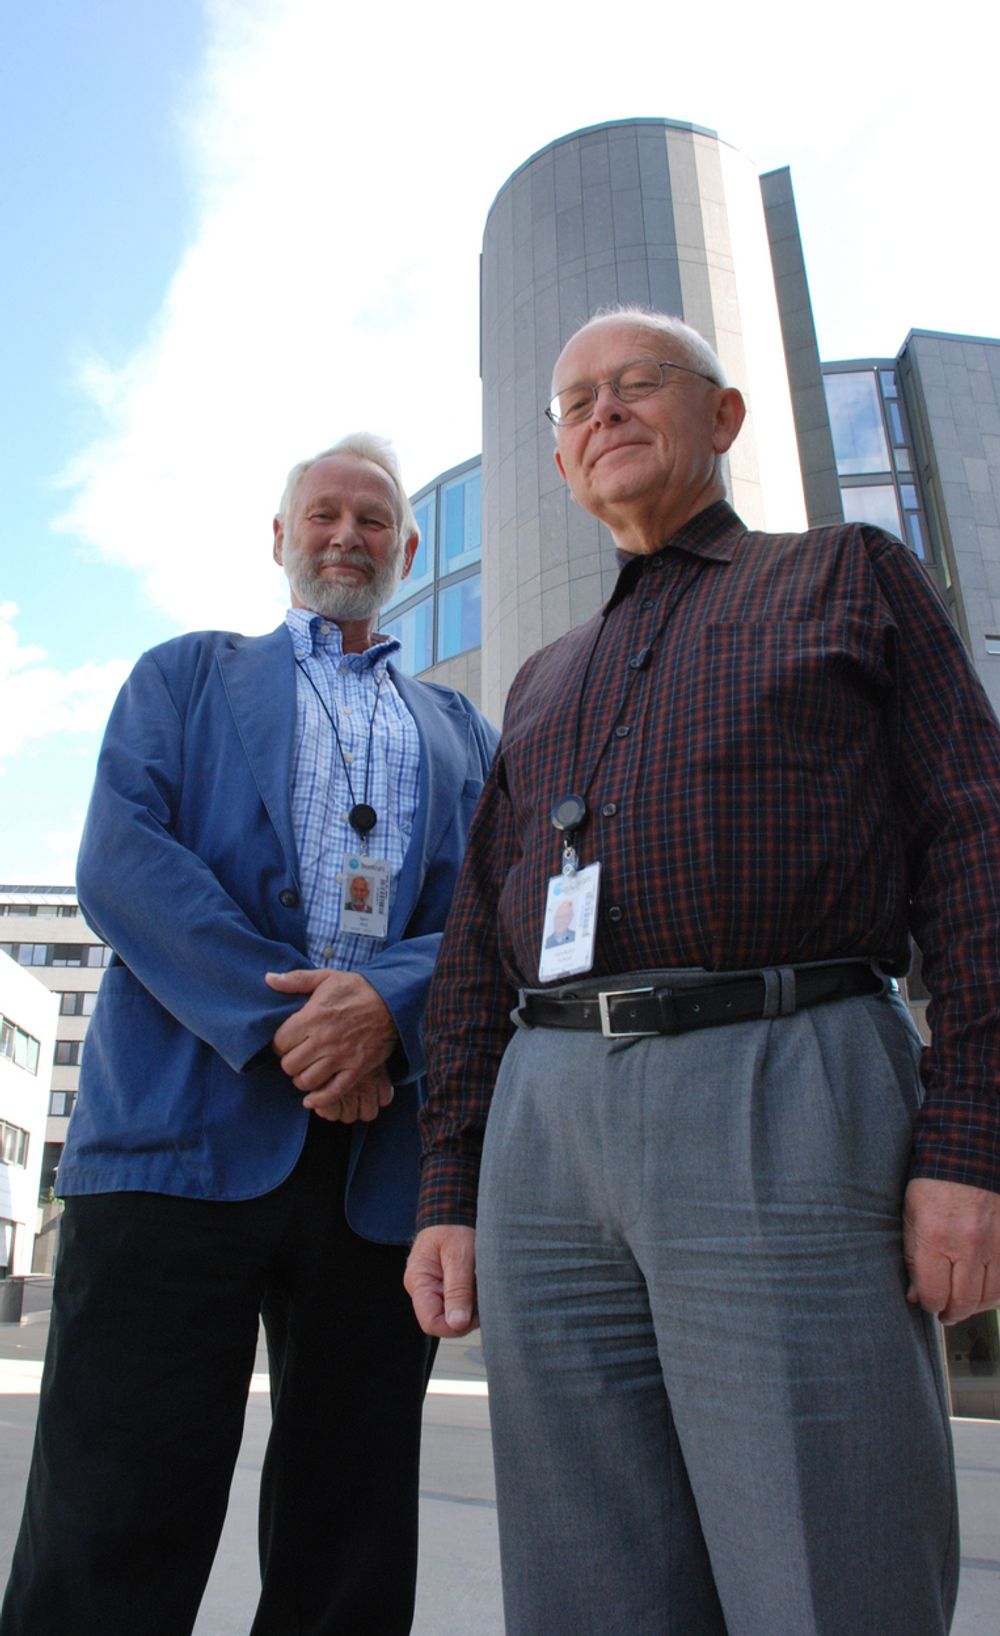 DE GAMLE ER ELDST: Bjørn Wold og Lars Audun Fodstad har ulikt utgangspunkt, men velger begge å tilbringe seniortiden i Statkraft, som spesialrådgivere på hvert sitt felt.